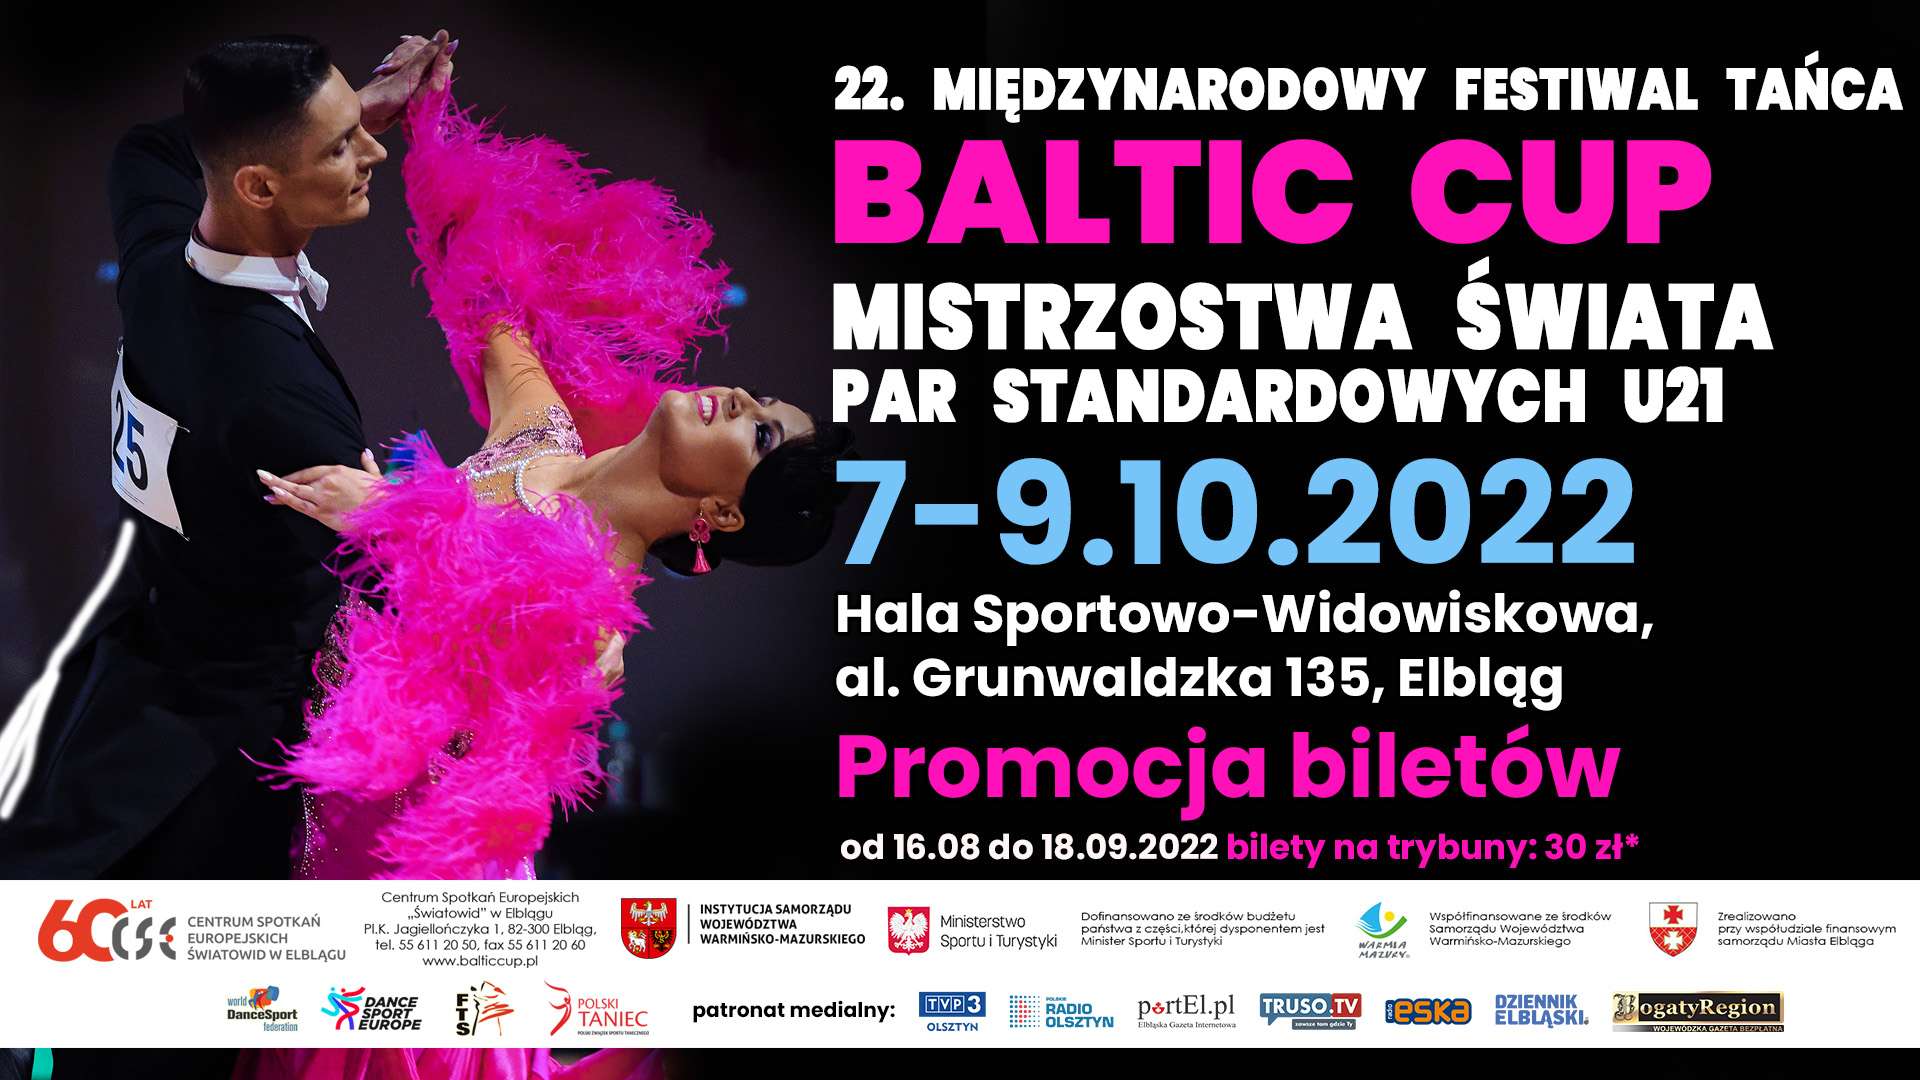 Przed nami Baltic Cup… znów nie zabraknie emocji